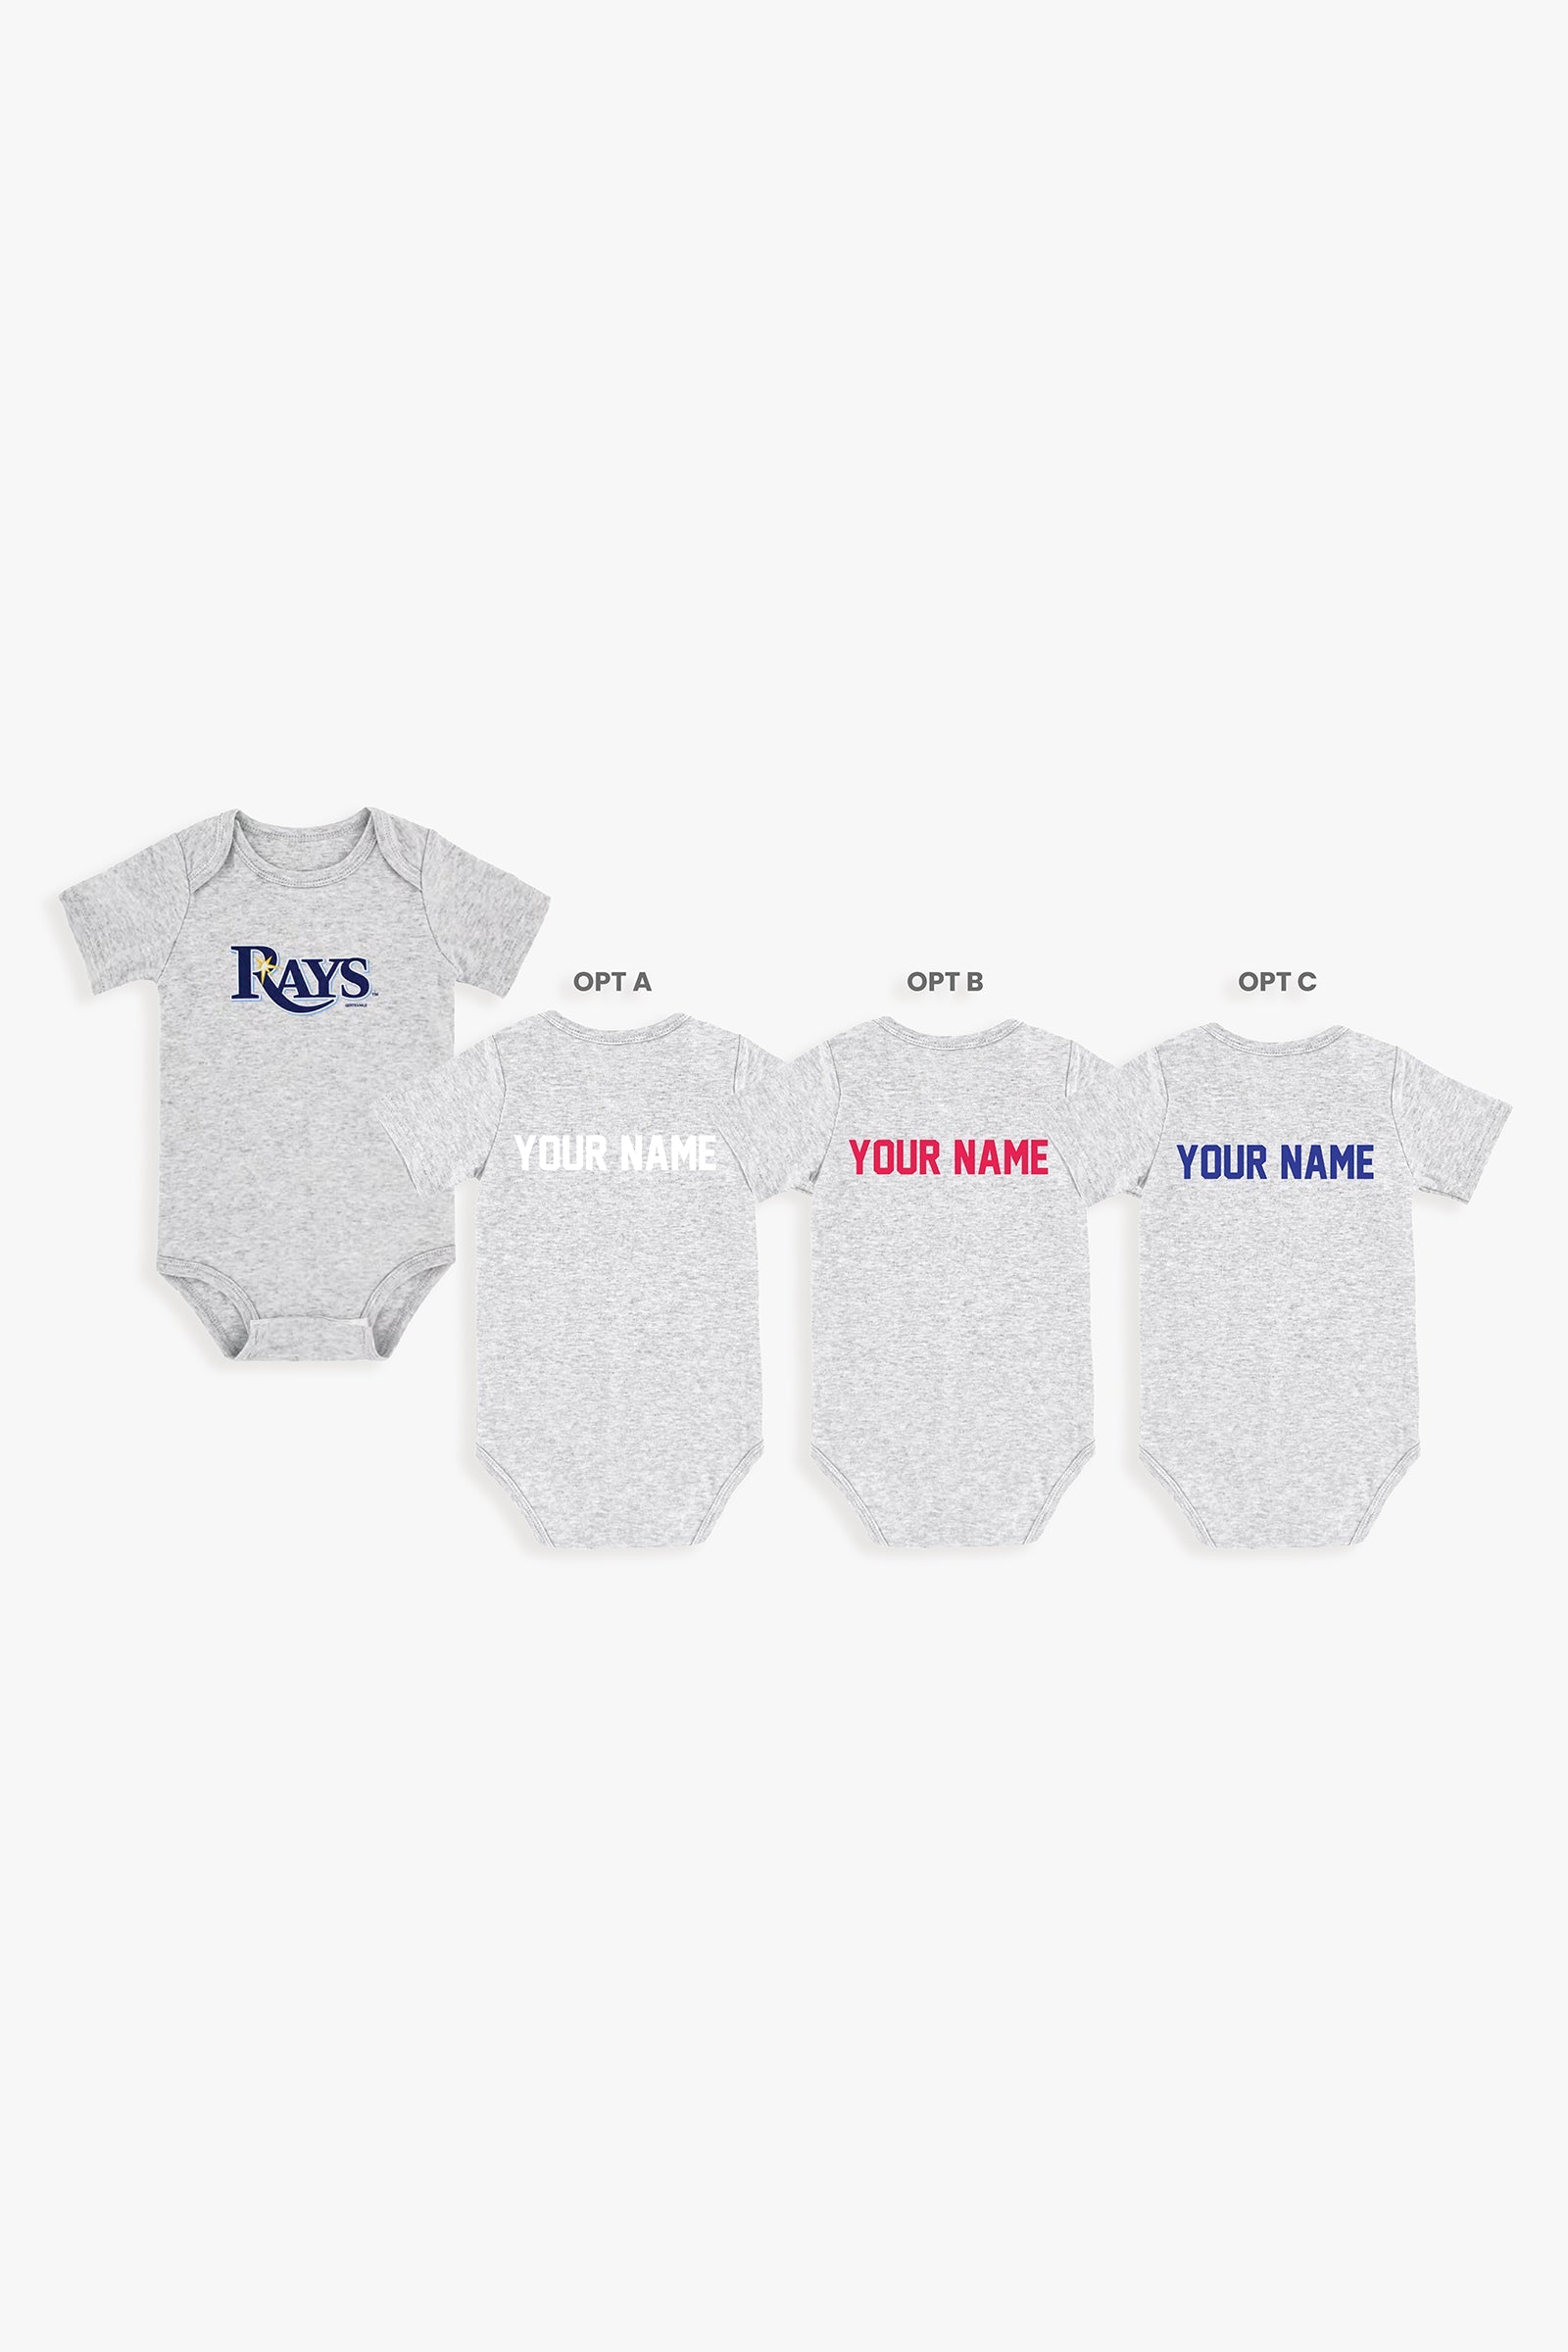 Customizable MLB Baby Onesie Bodysuit in Grey (3-6 Months)